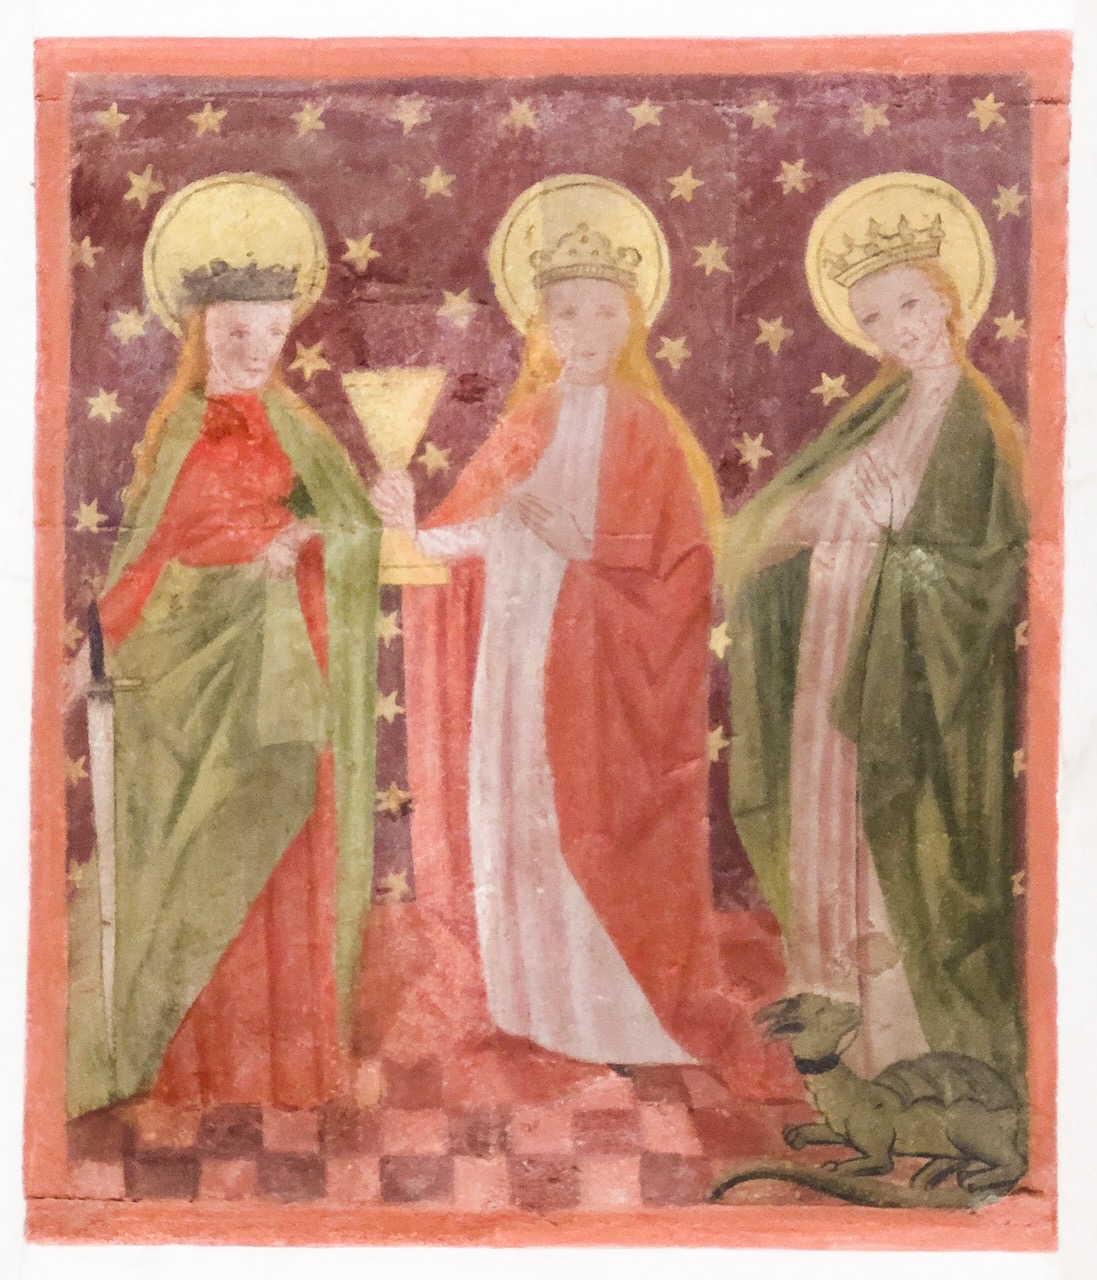 Wandbild der heiligen Jungfrauen Katharina, Barbara und Margaretha (genannt „die drei heiligen Madla“; 2. Hälfte 15. Jh.)